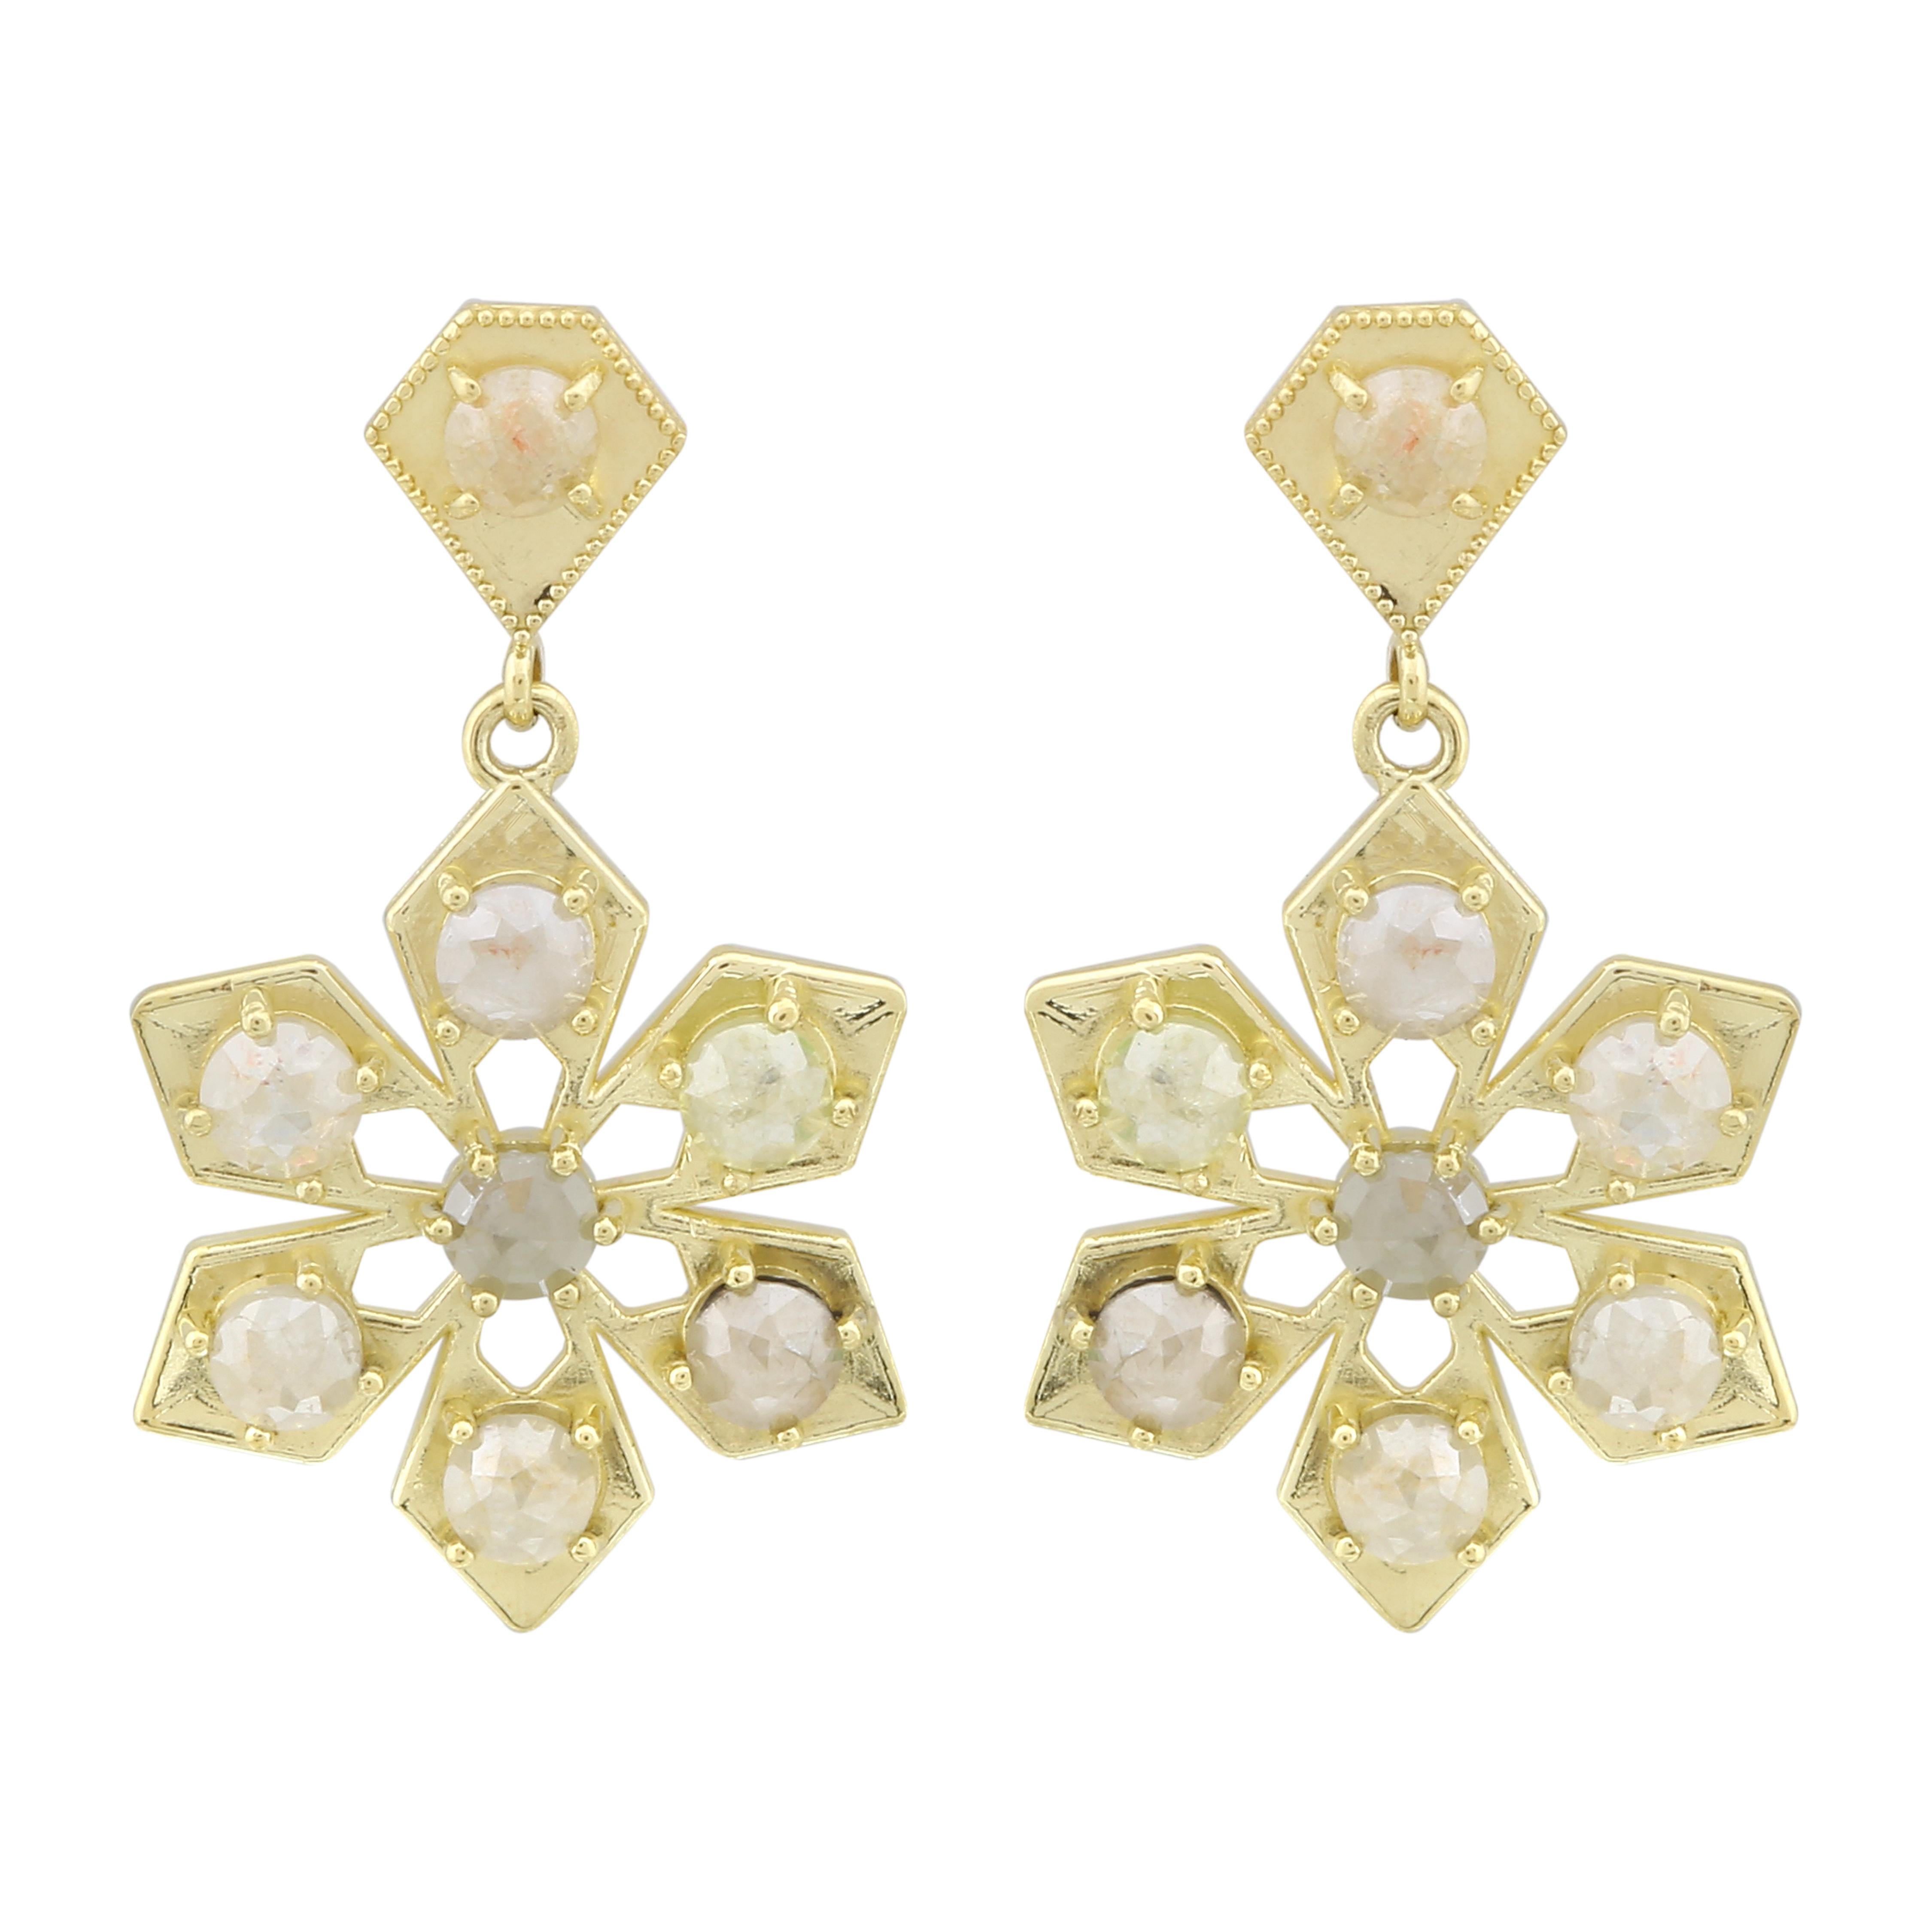 Amyn, Spear Florette Rose Cut Diamond Pendant Post Earrings in 18k Yellow Gold For Sale